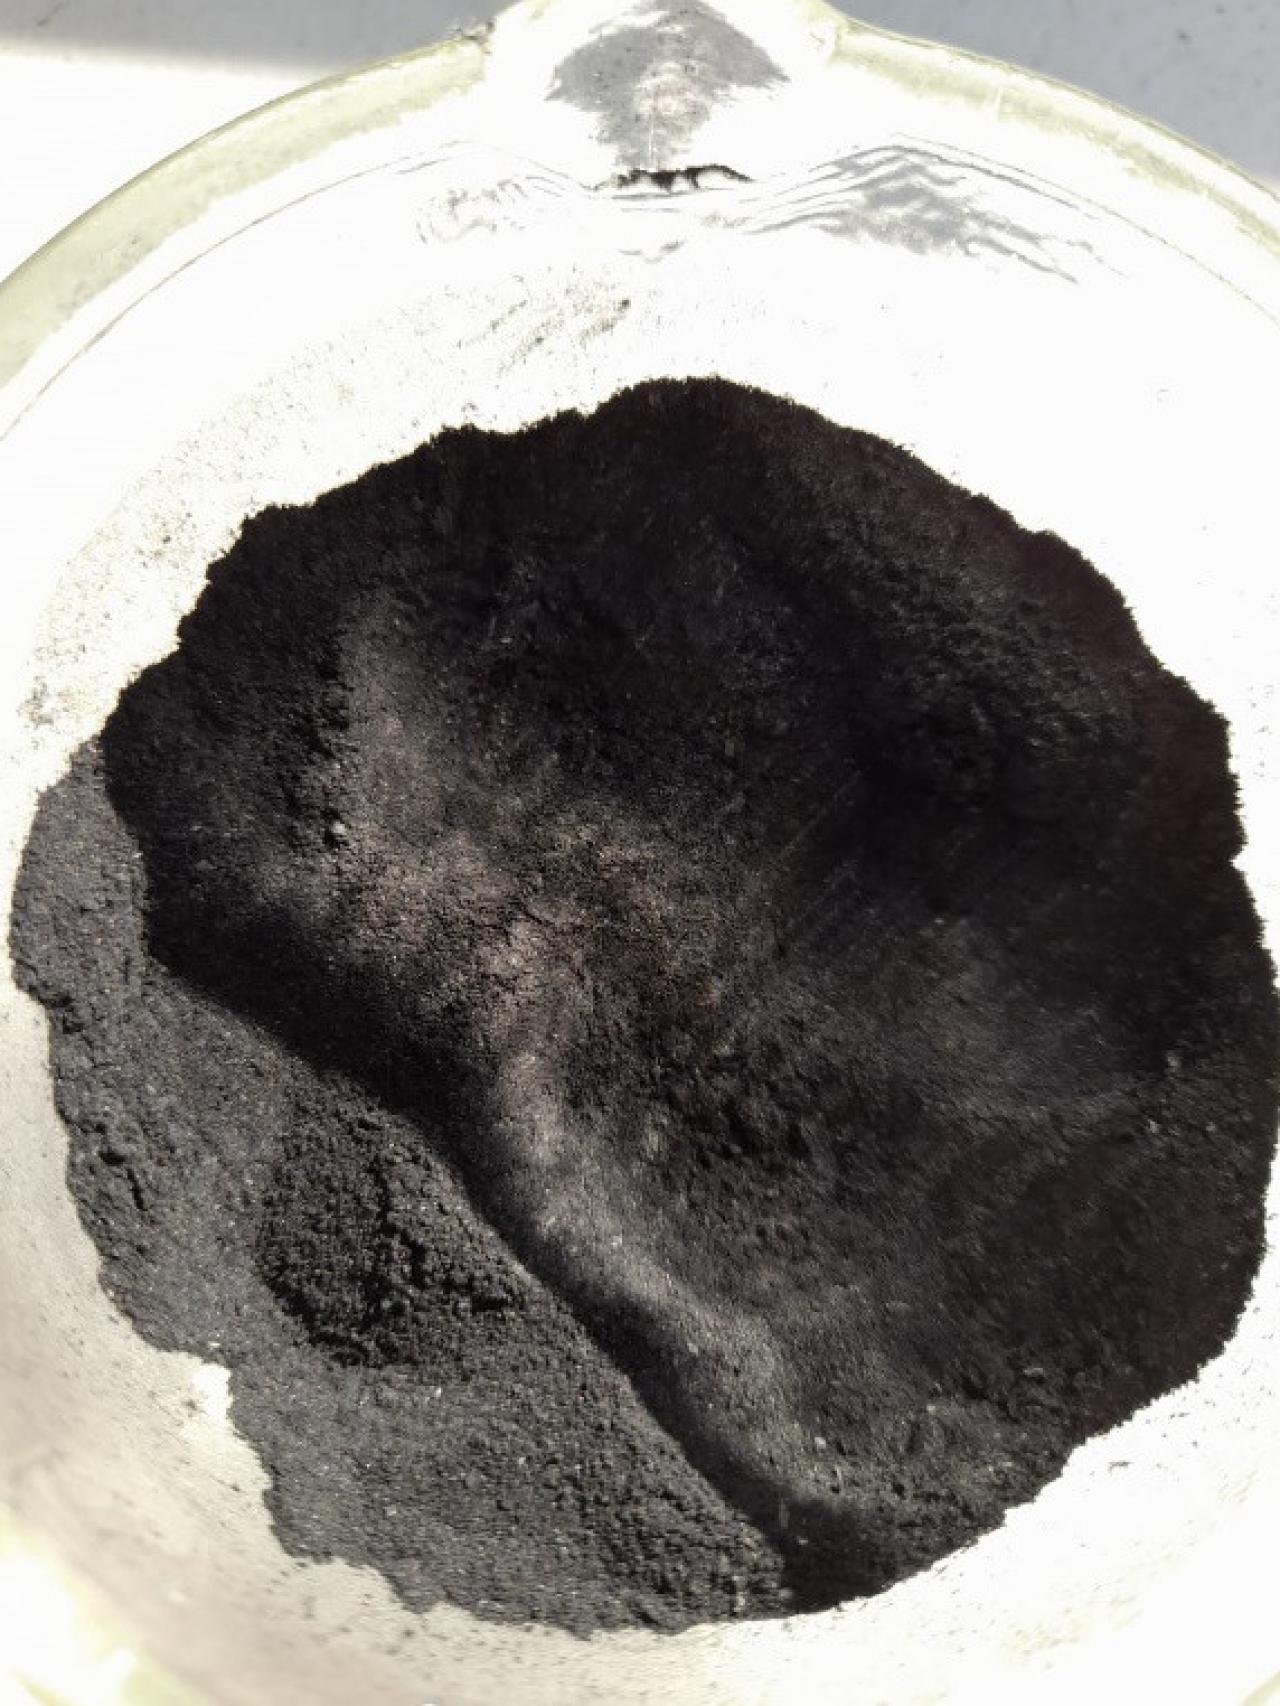 Carbón activado de yerba mate molido, durante la segunda fase en el laboratorio.